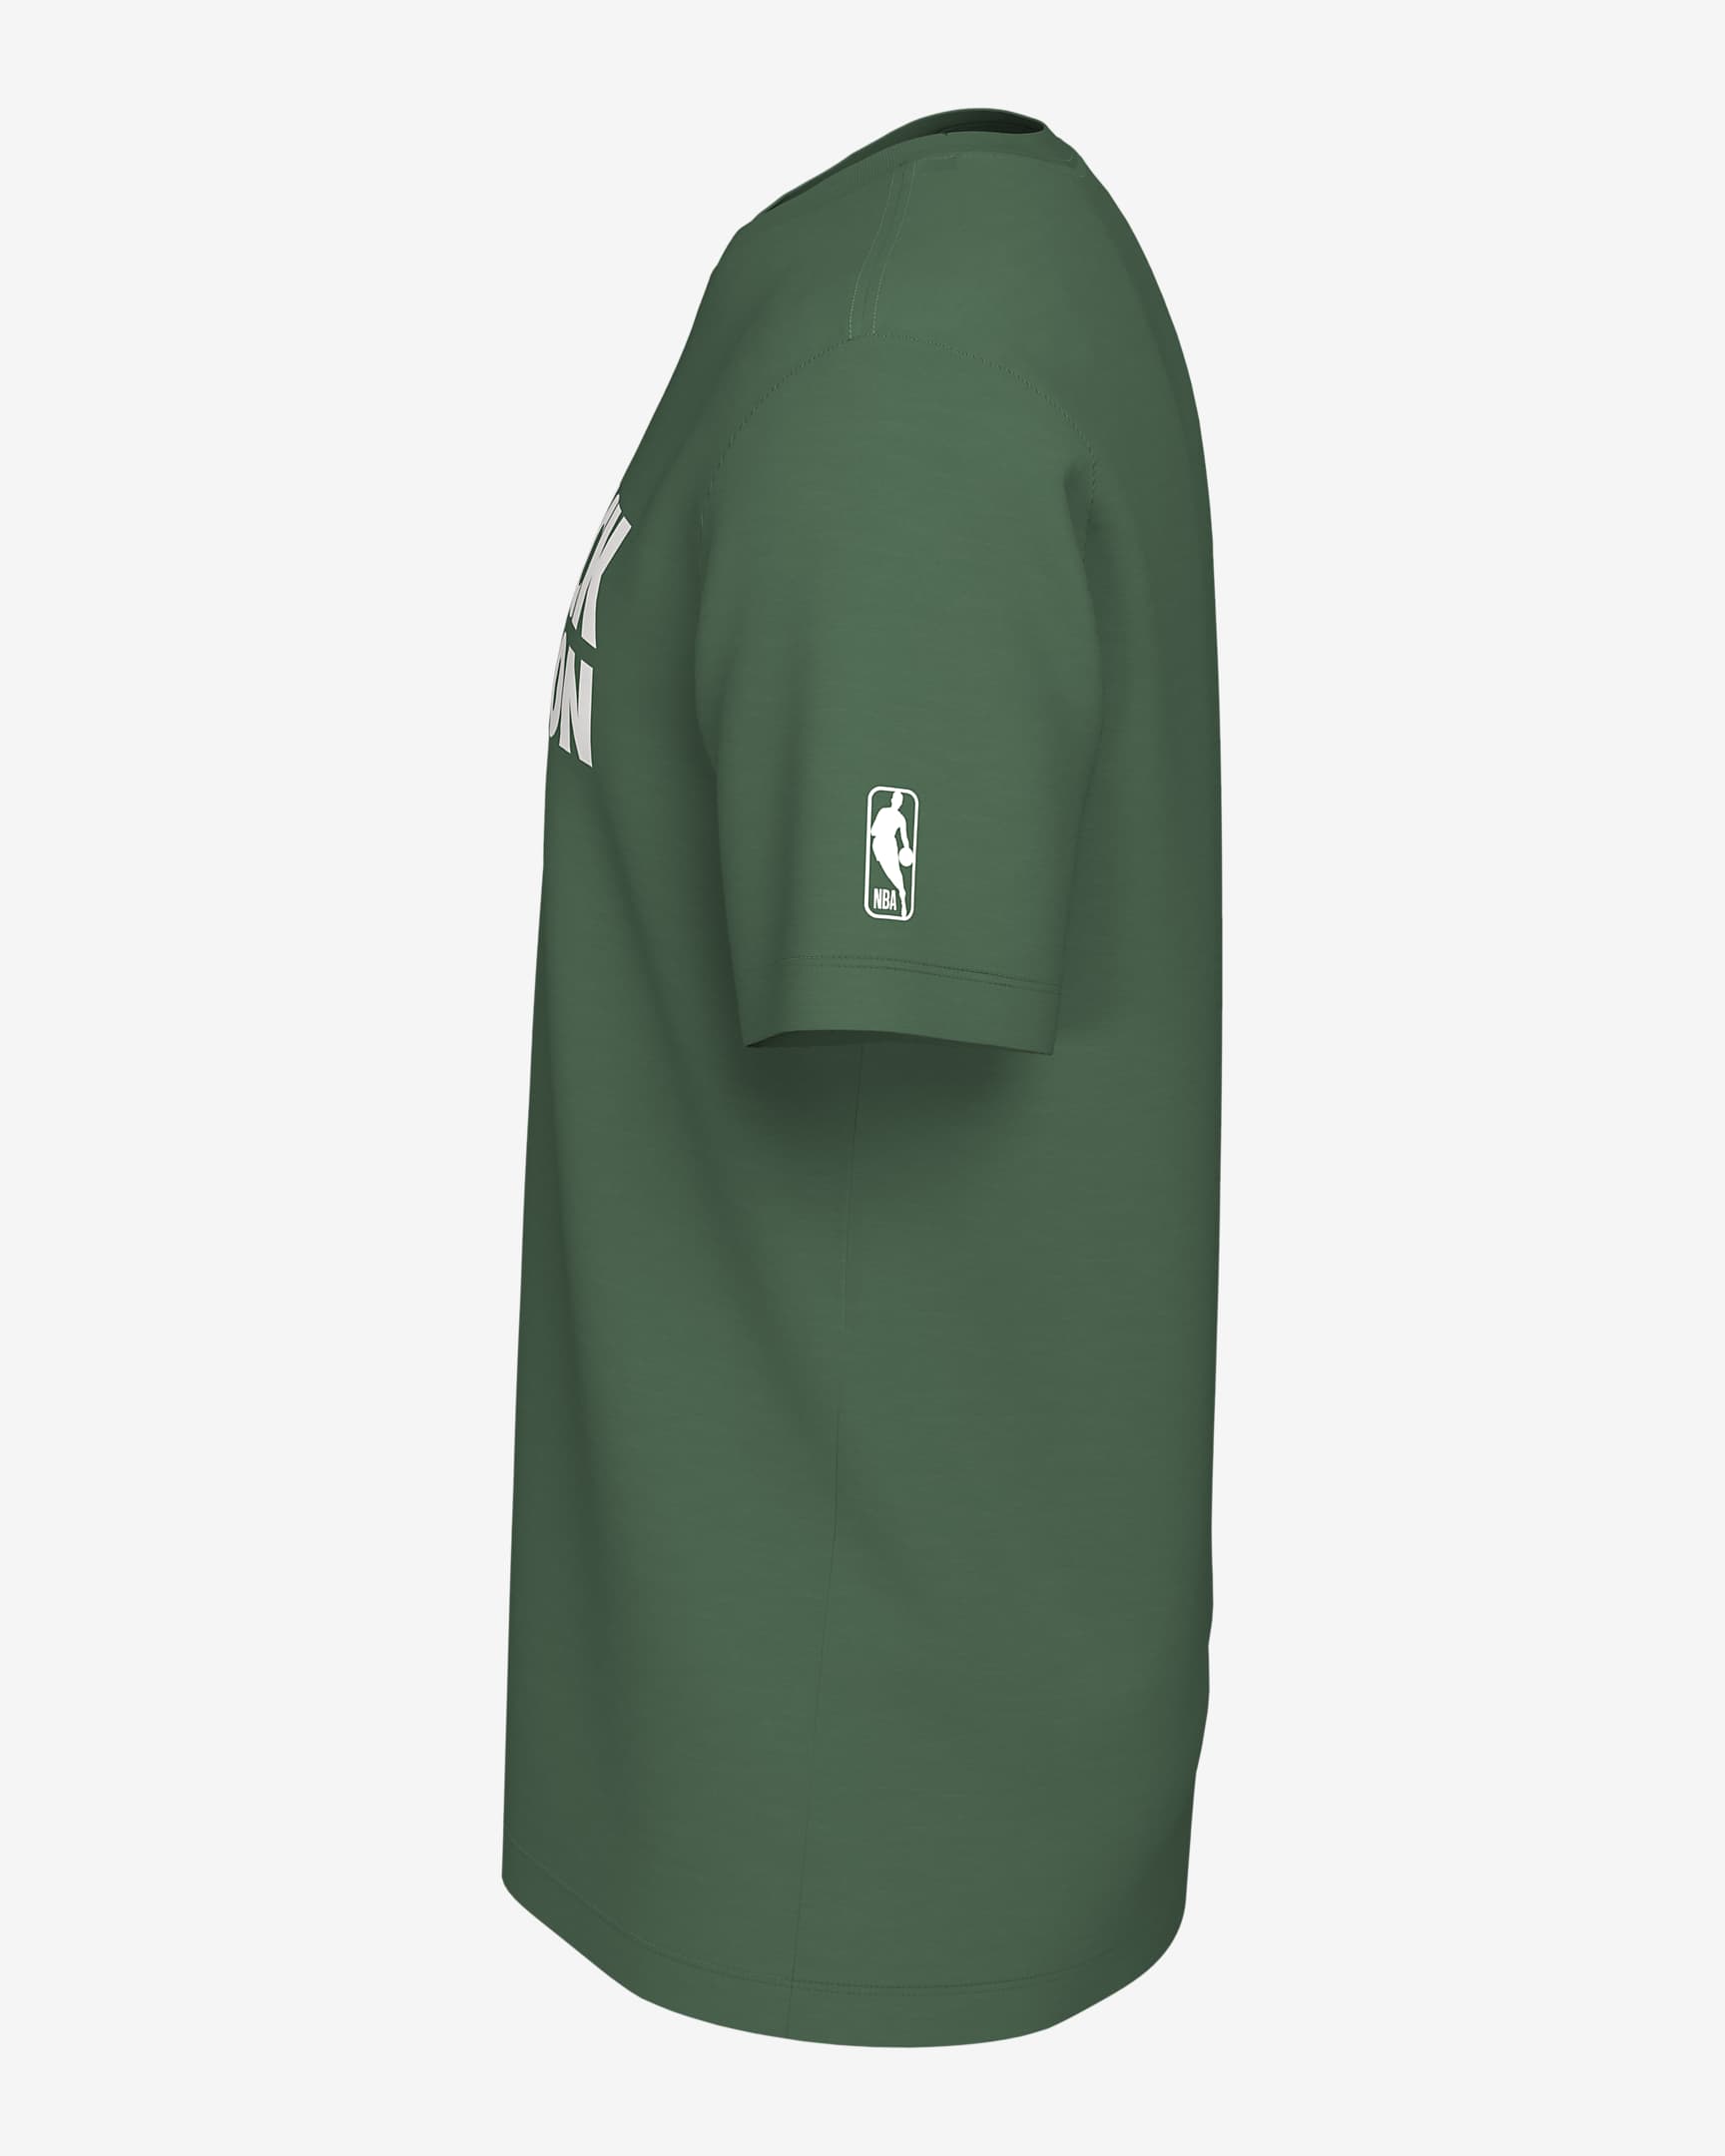 Jayson Tatum Boston Celtics Men's Nike NBA T-Shirt - Clover